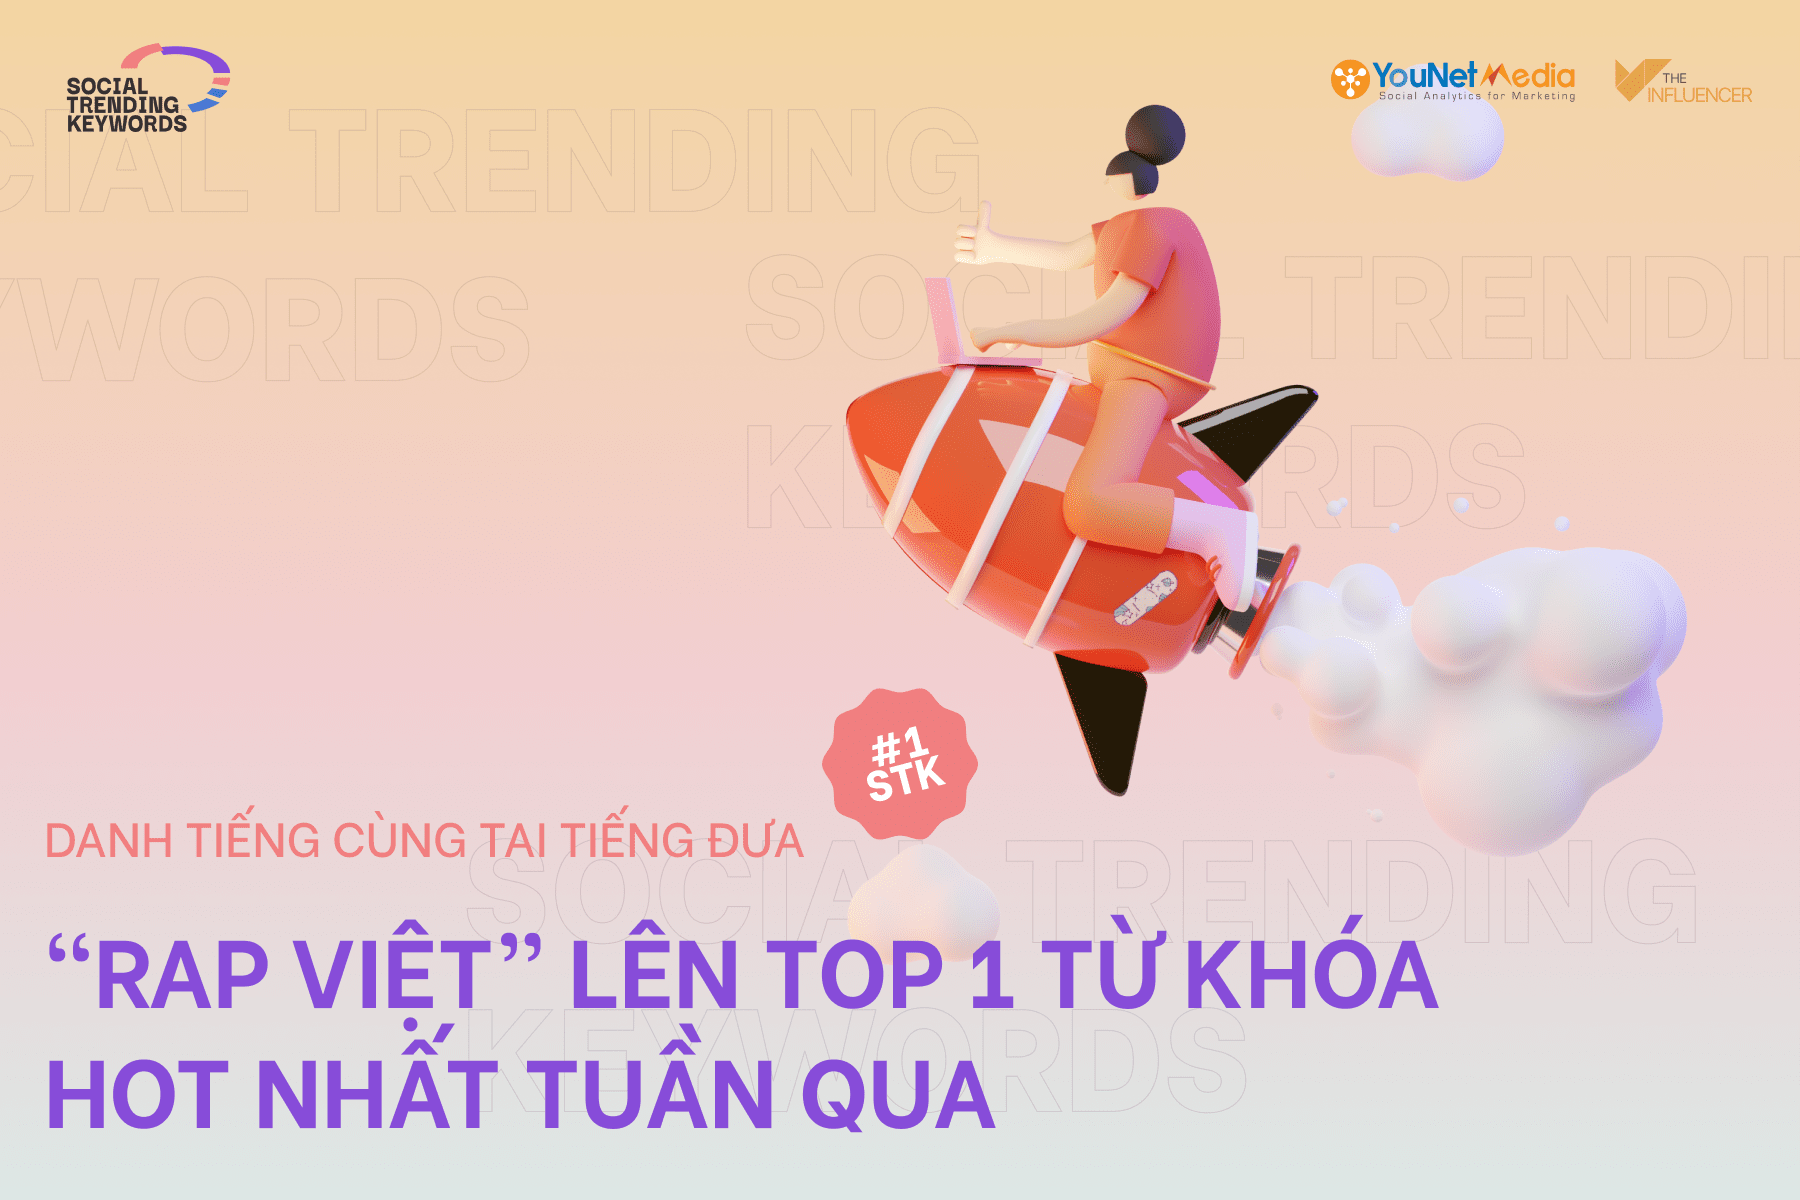 #SocialTrendingKeywords: Danh tiếng cùng tai tiếng đưa “Rap Việt” lên top 1 từ khóa hot nhất tuần qua